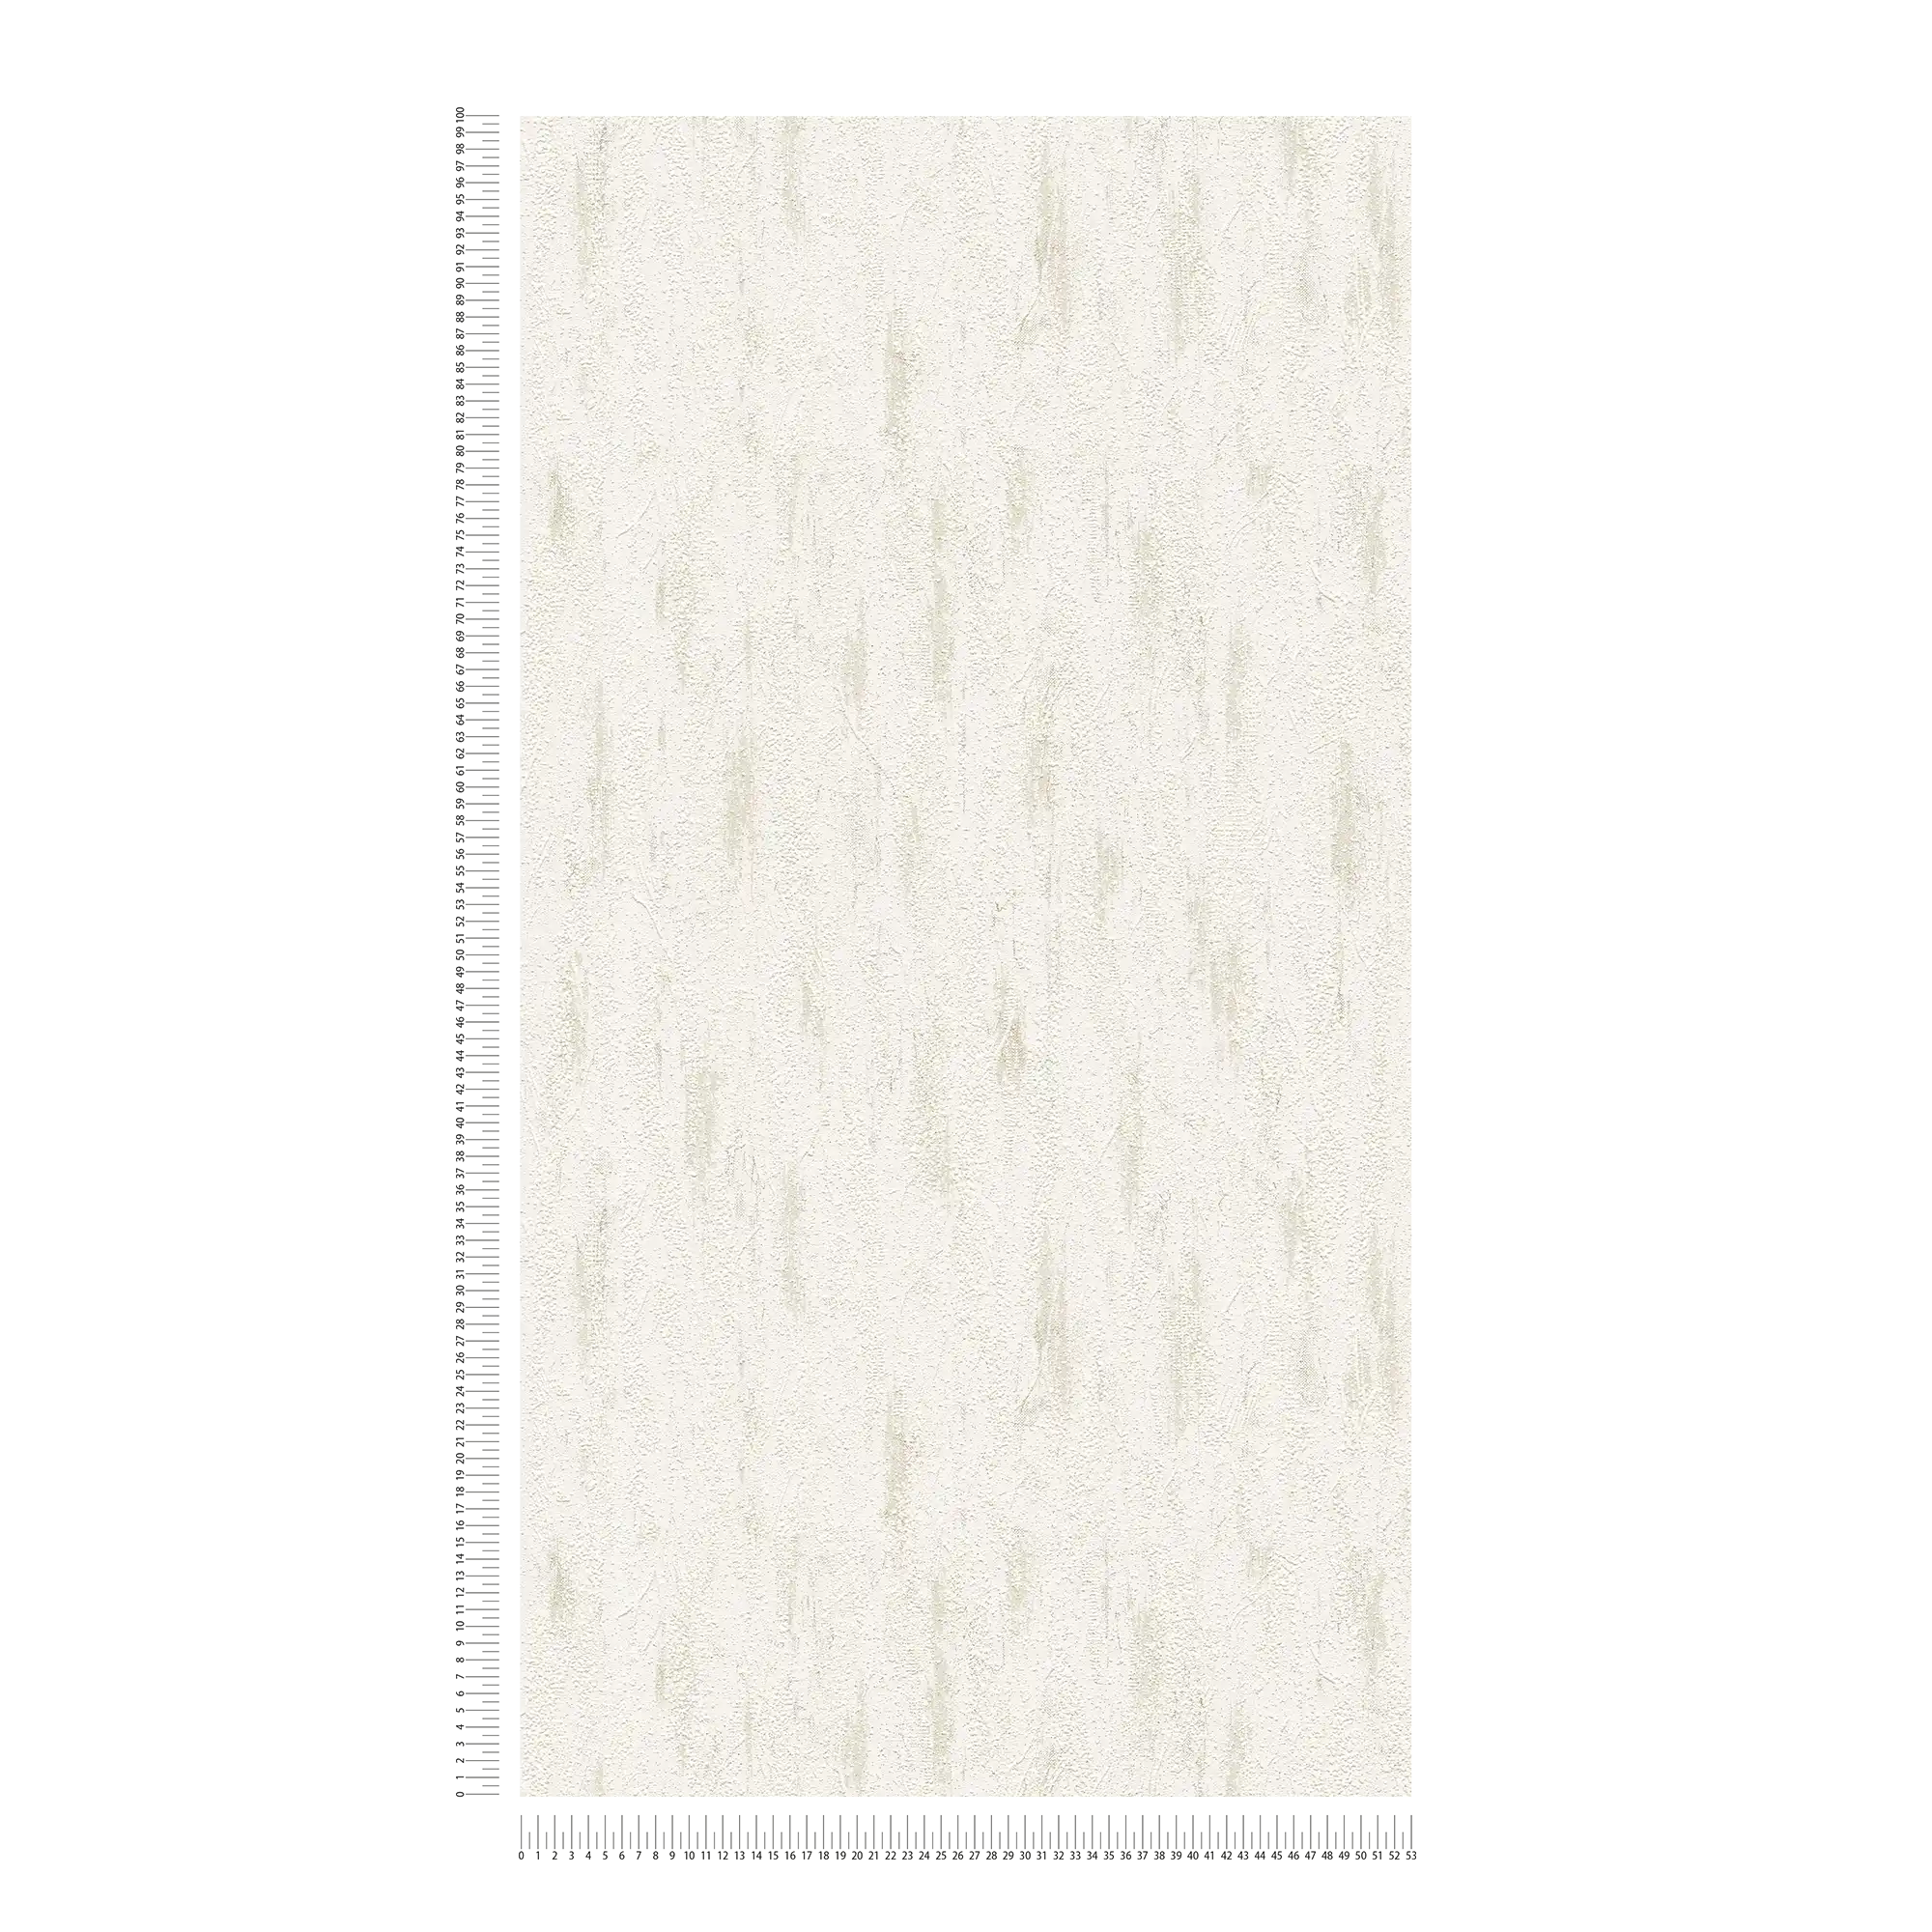             Gipsoptisch behang met structuurdecor & kleurschakeringen - grijs, crème
        